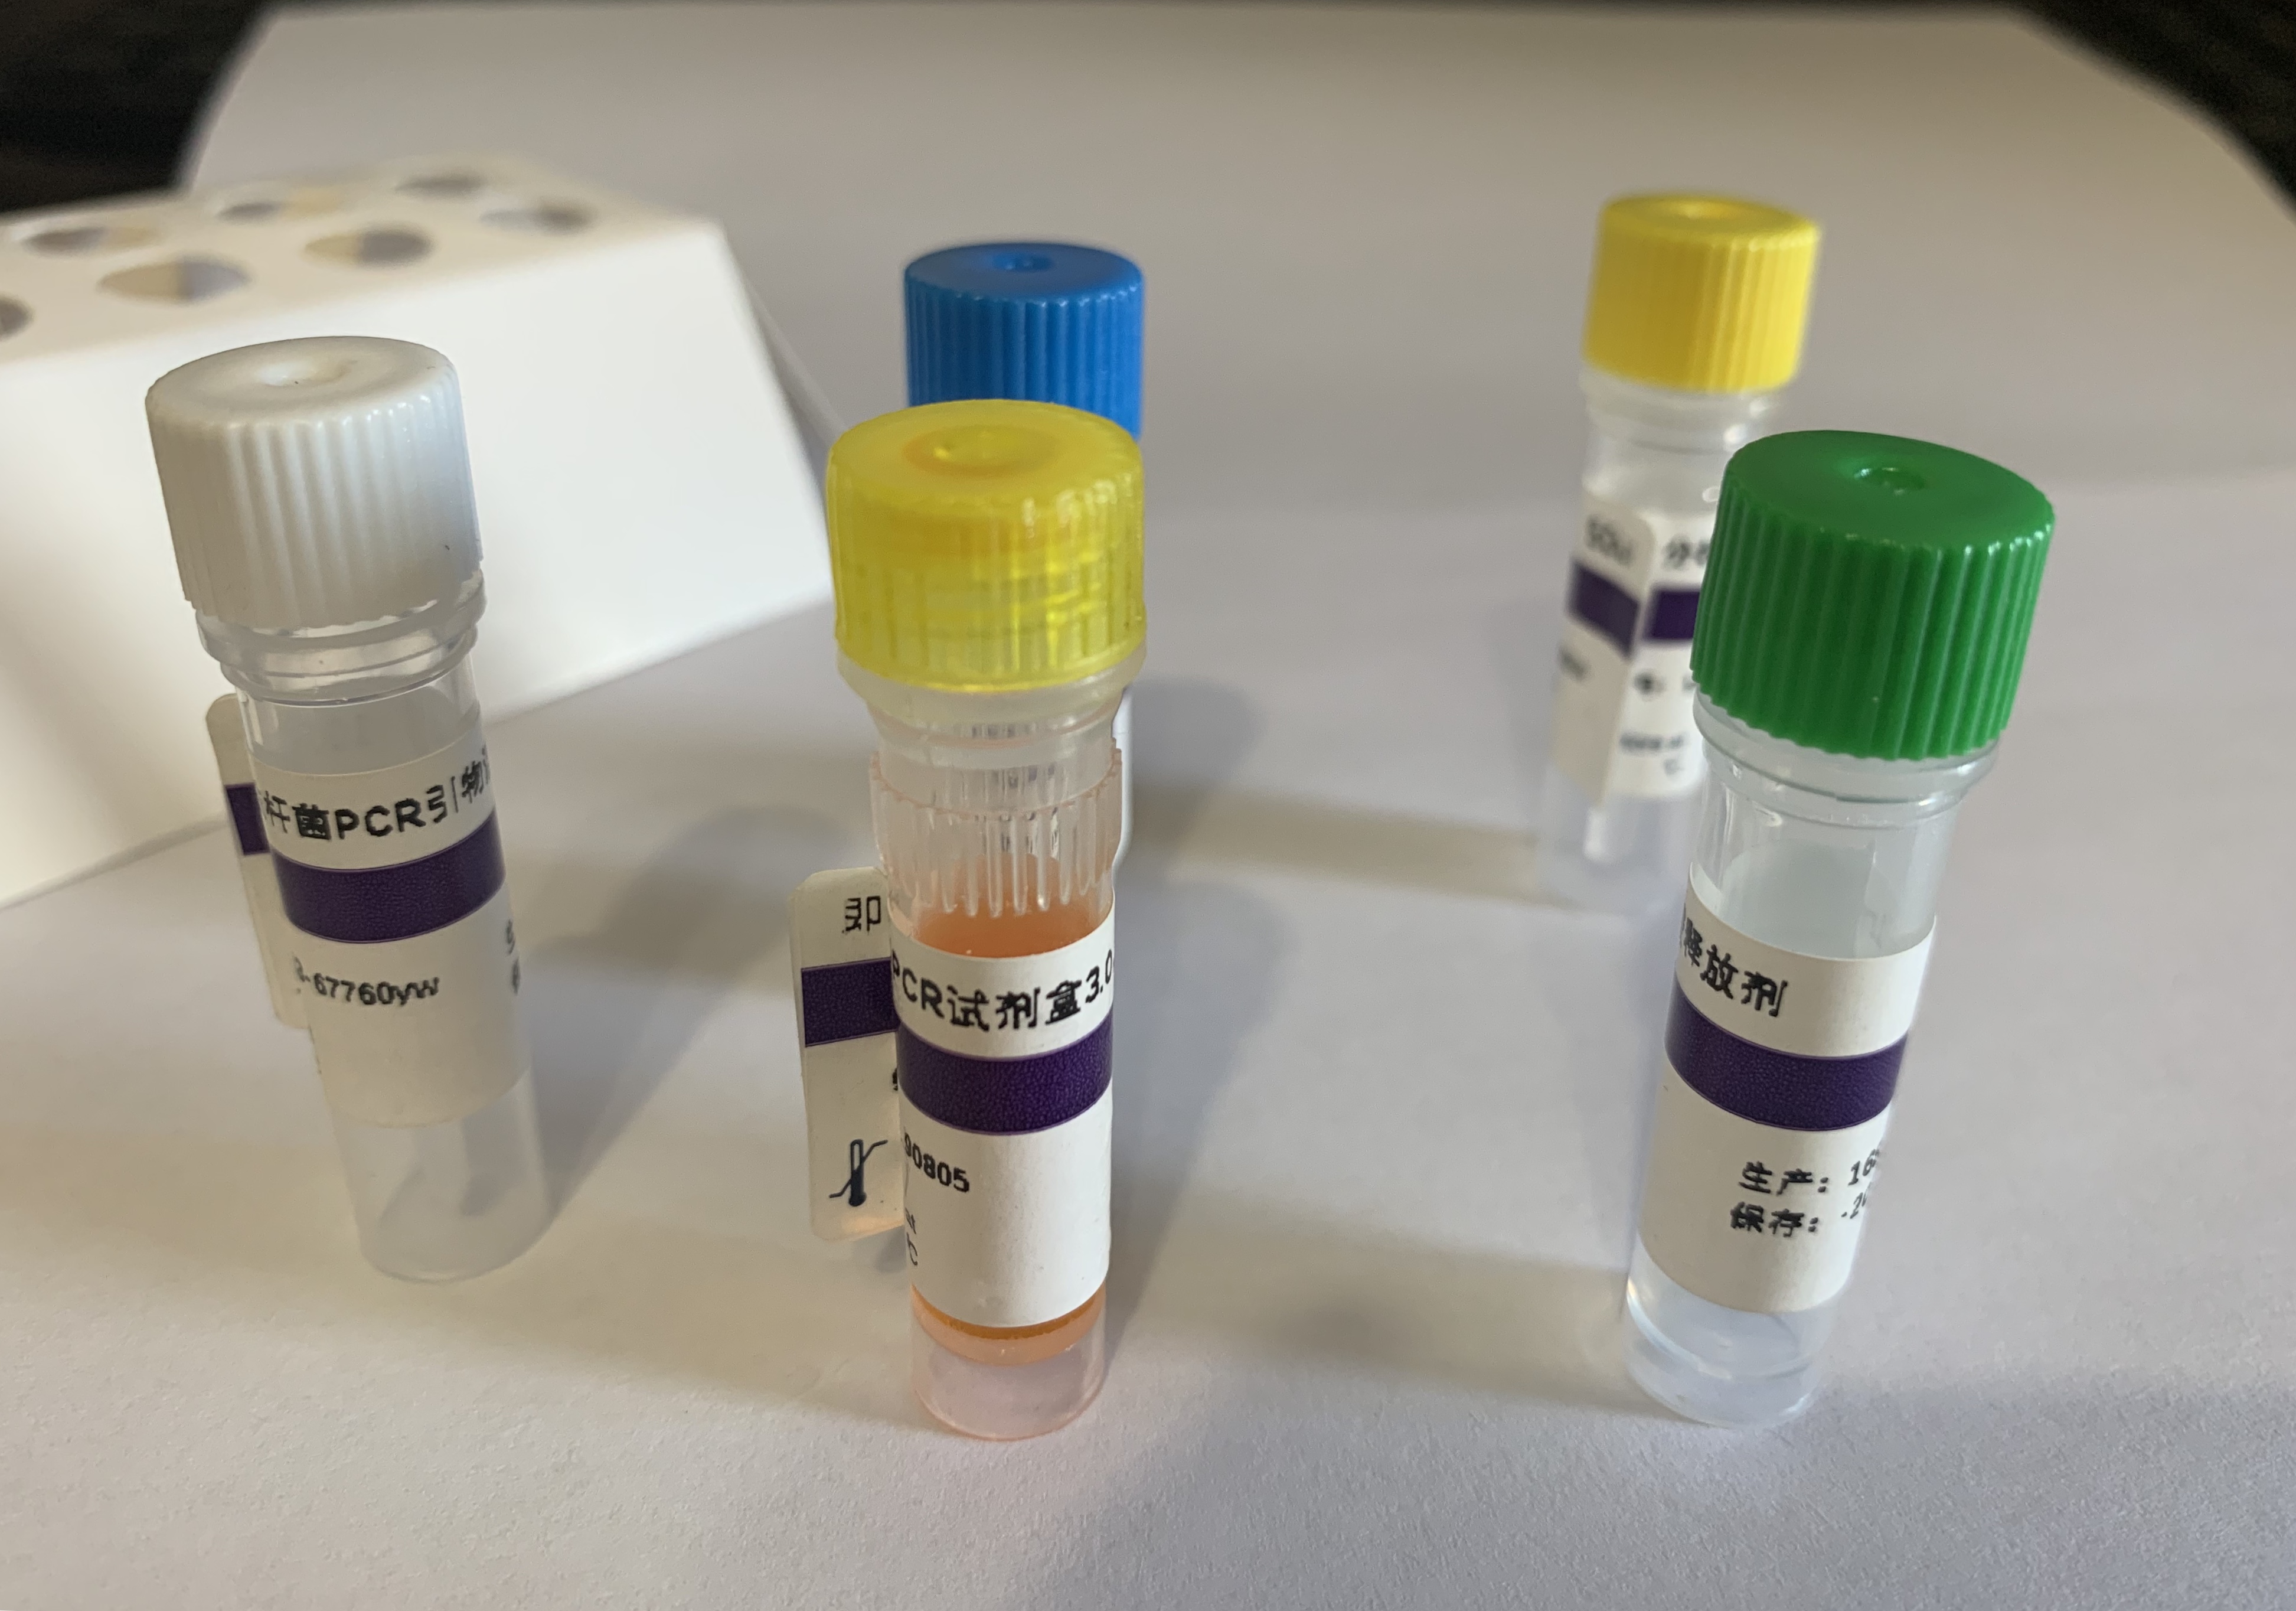 赤点石斑鱼神经坏死病毒RT-PCR试剂盒